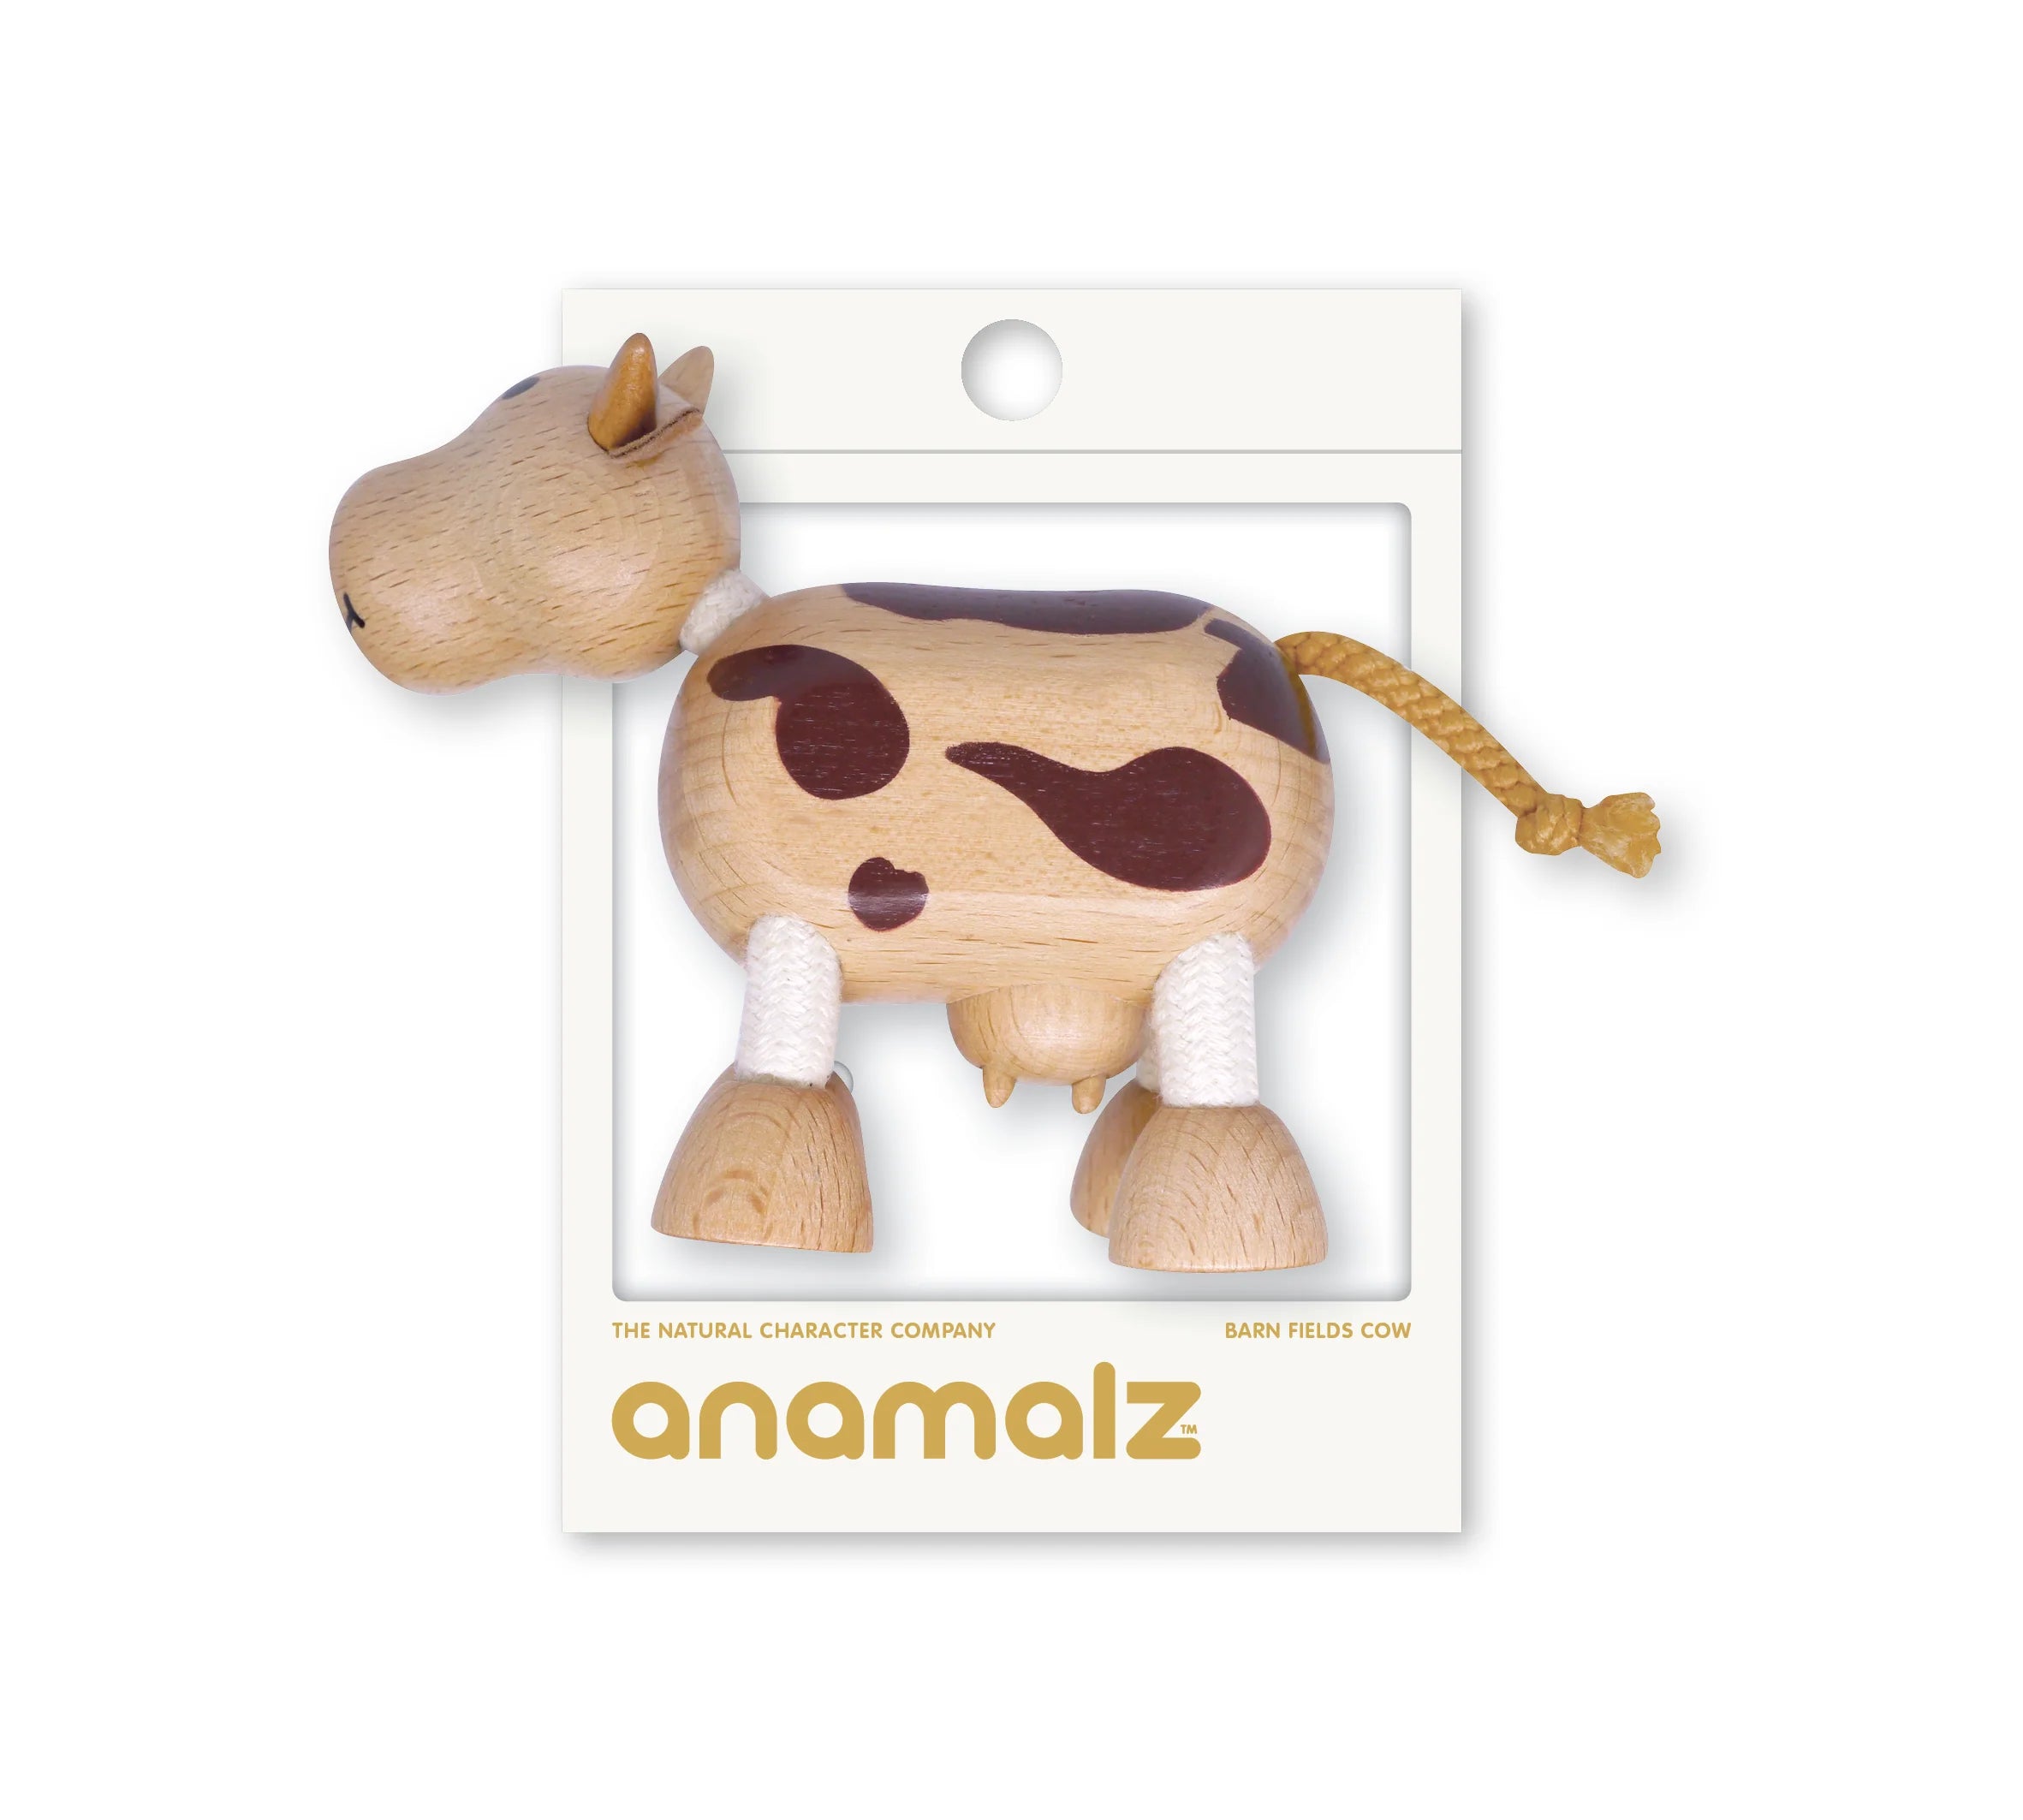 Anamalz cow